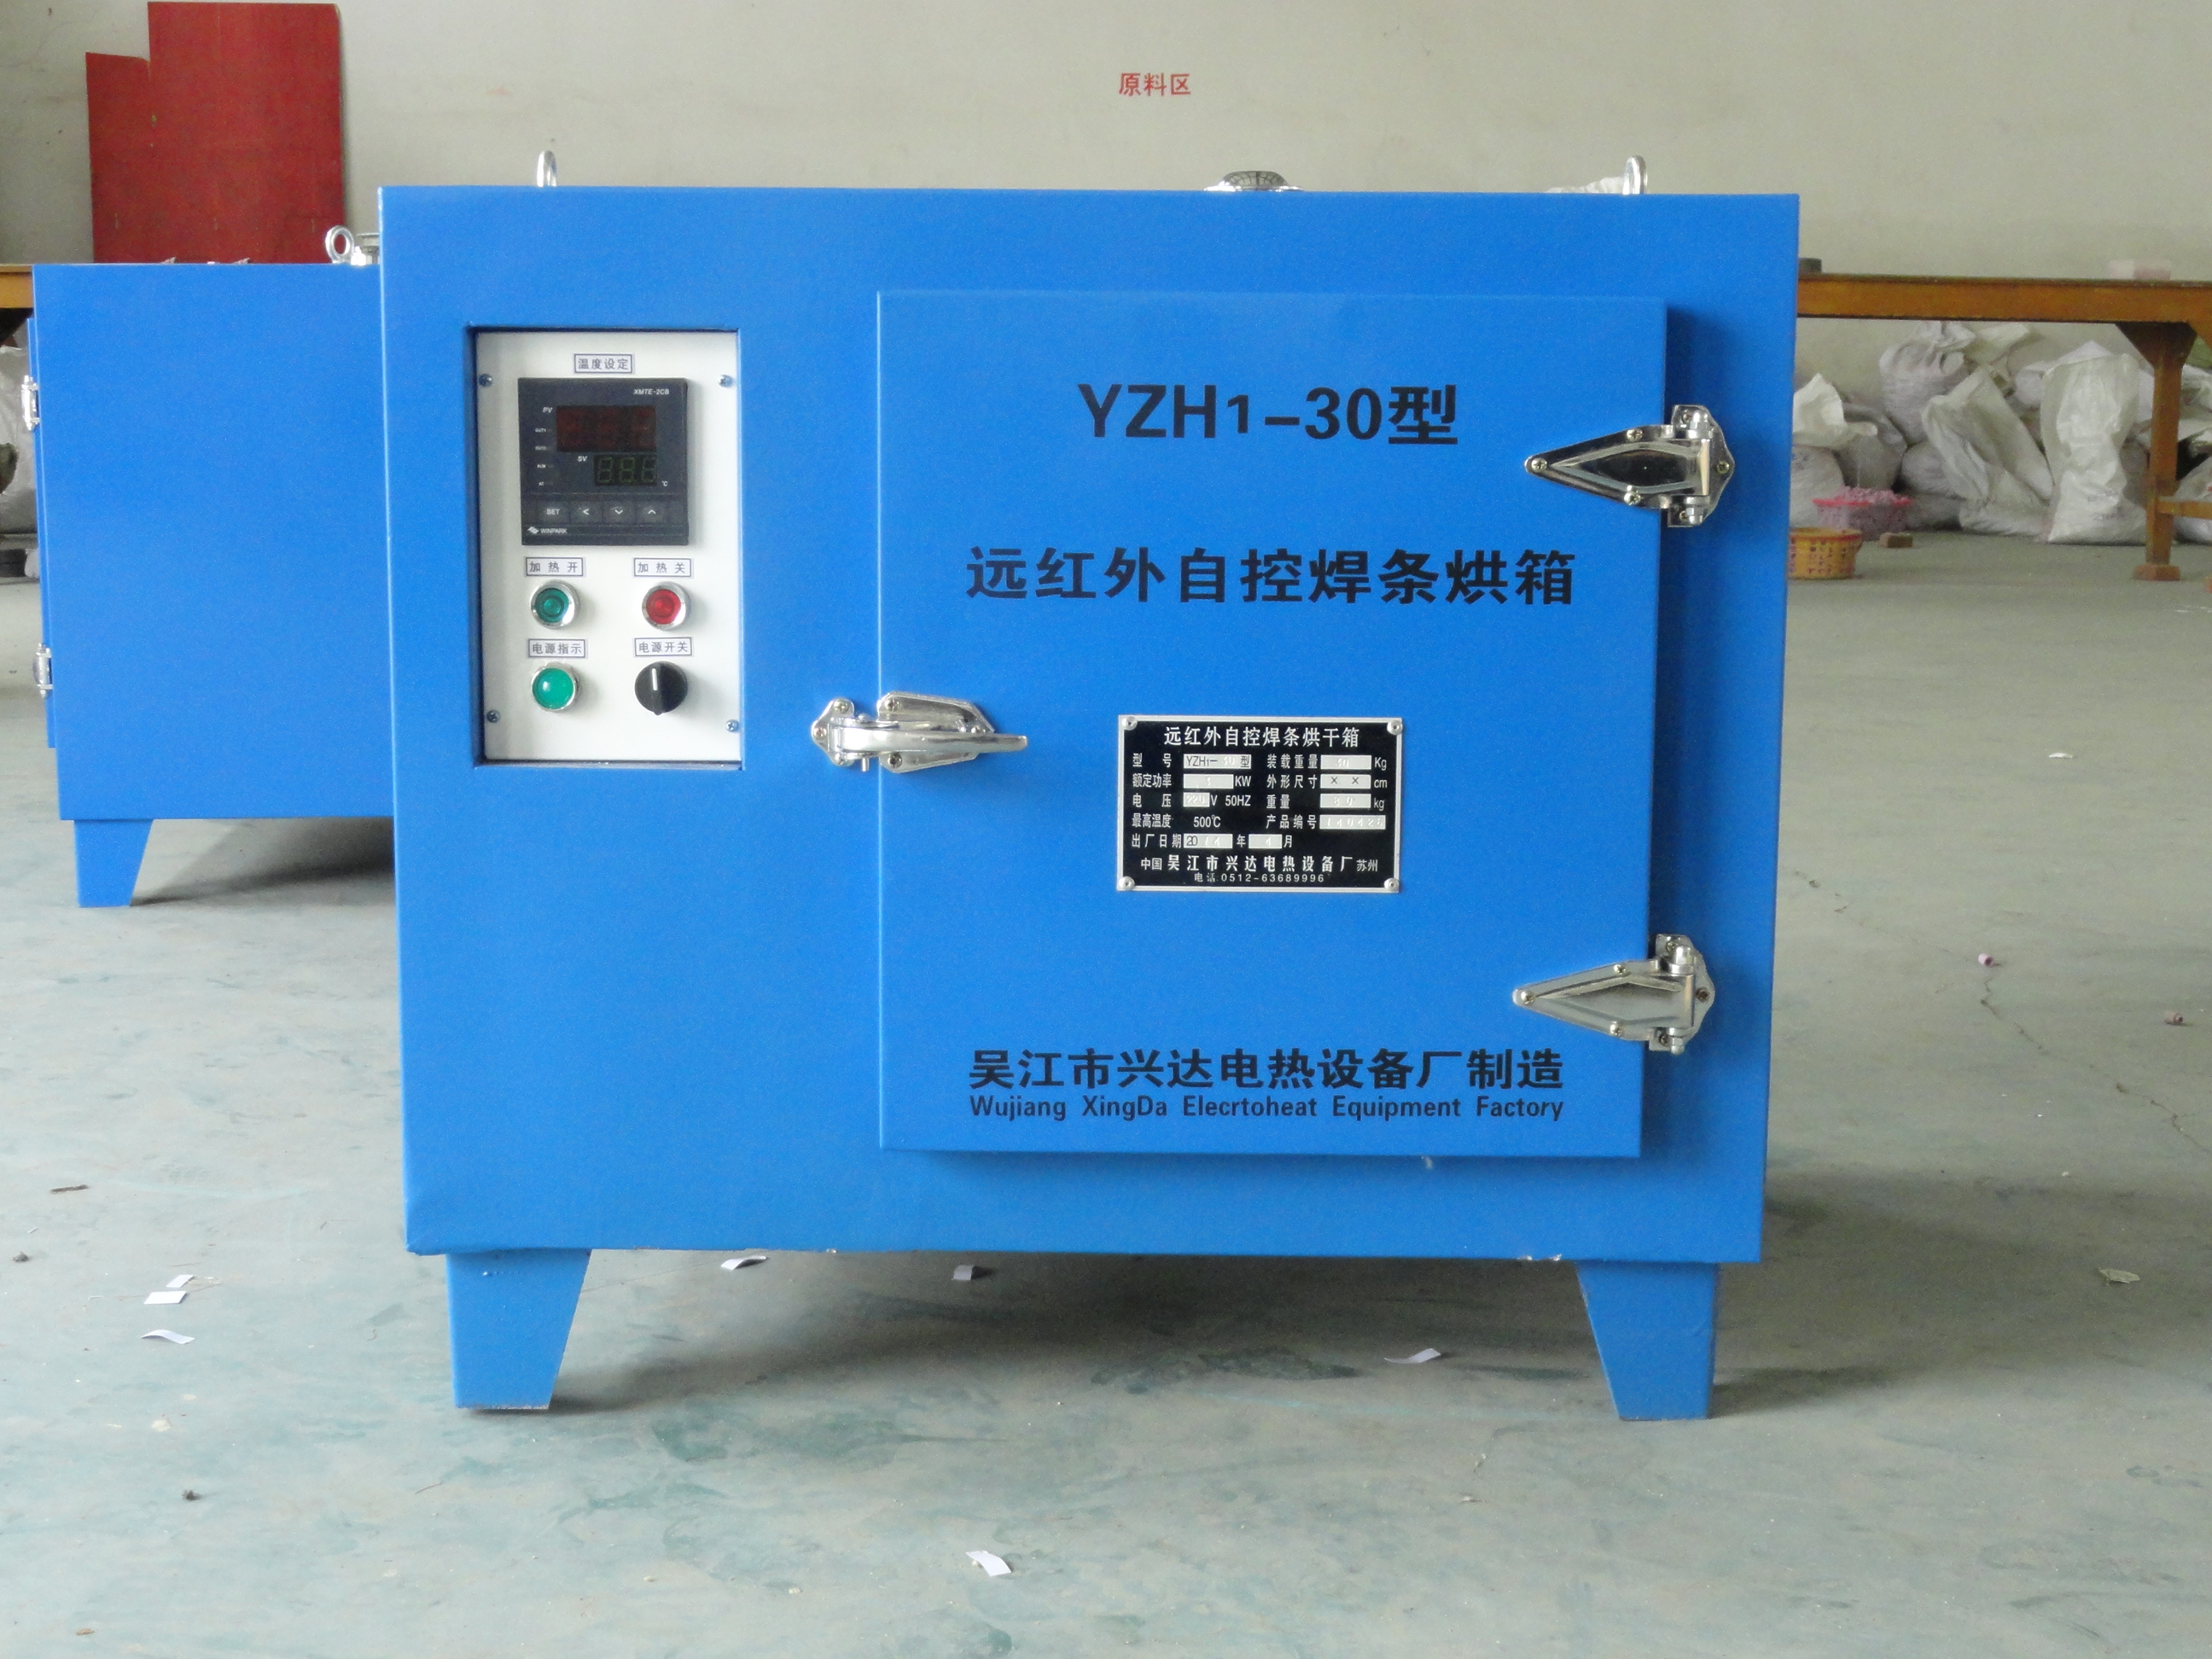 供应远红外焊条烘箱YZH1-30KG